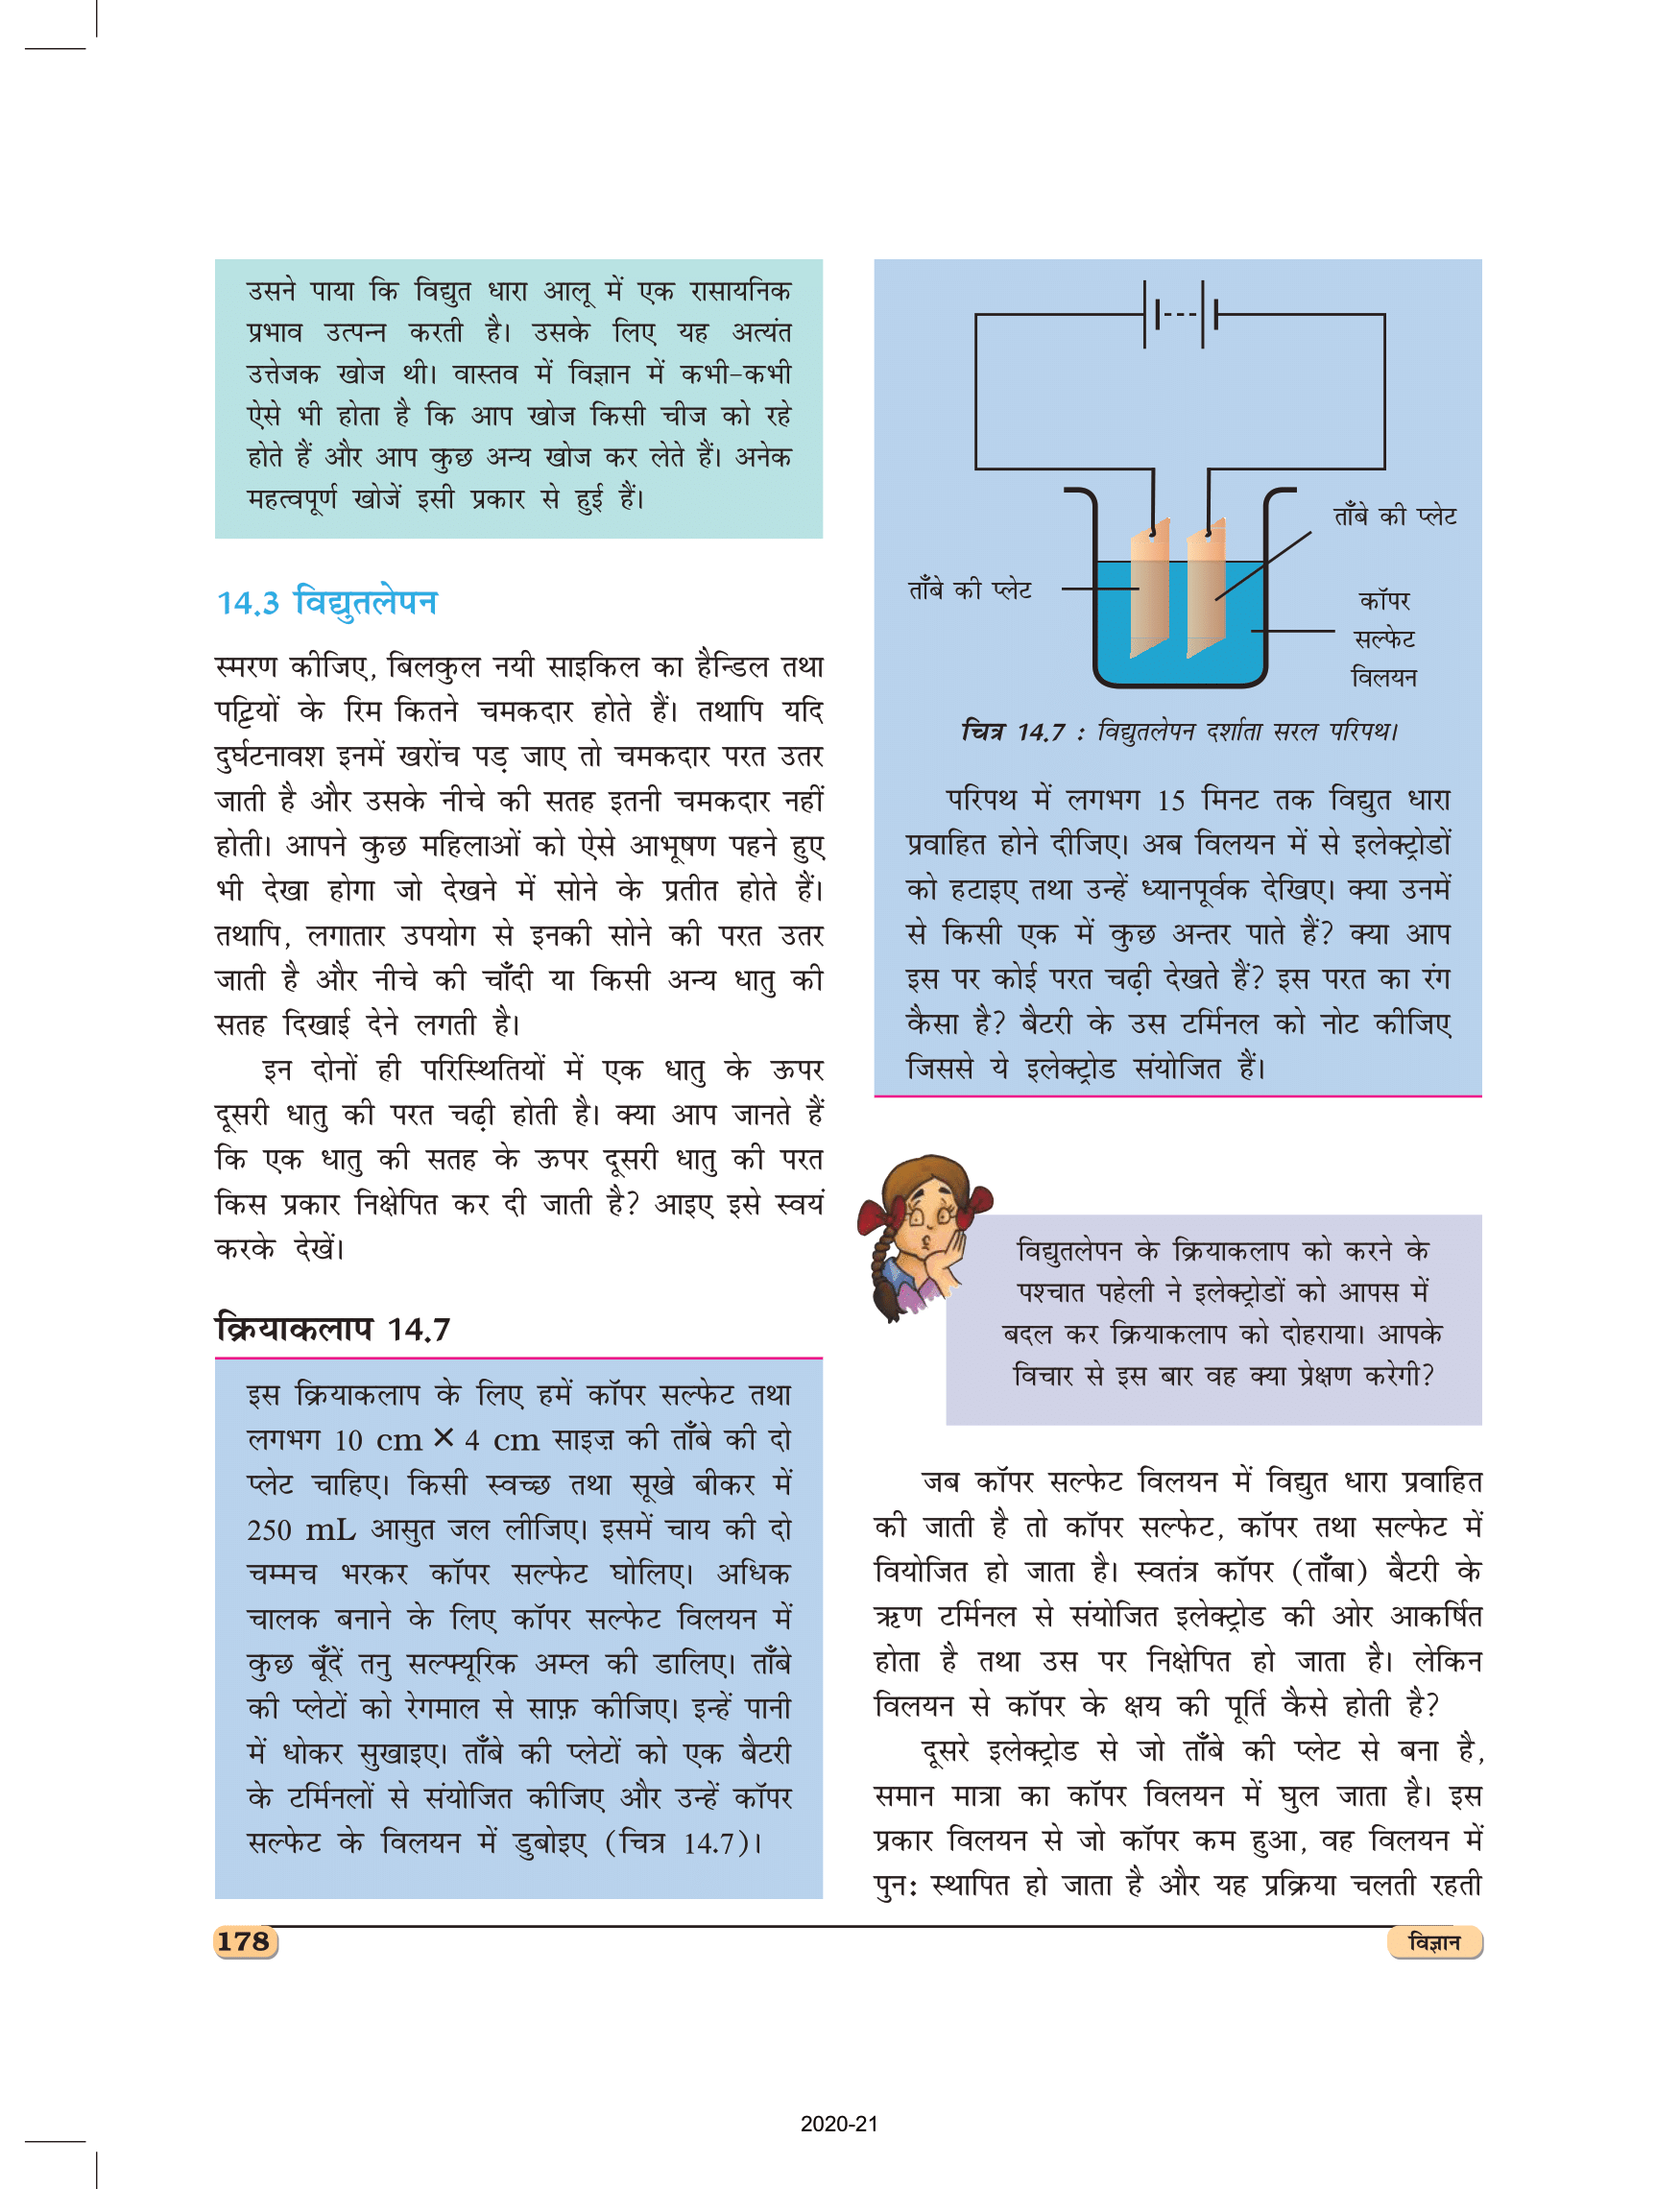 कक्षा 8 विज्ञान अध्याय 14 की पुस्तक